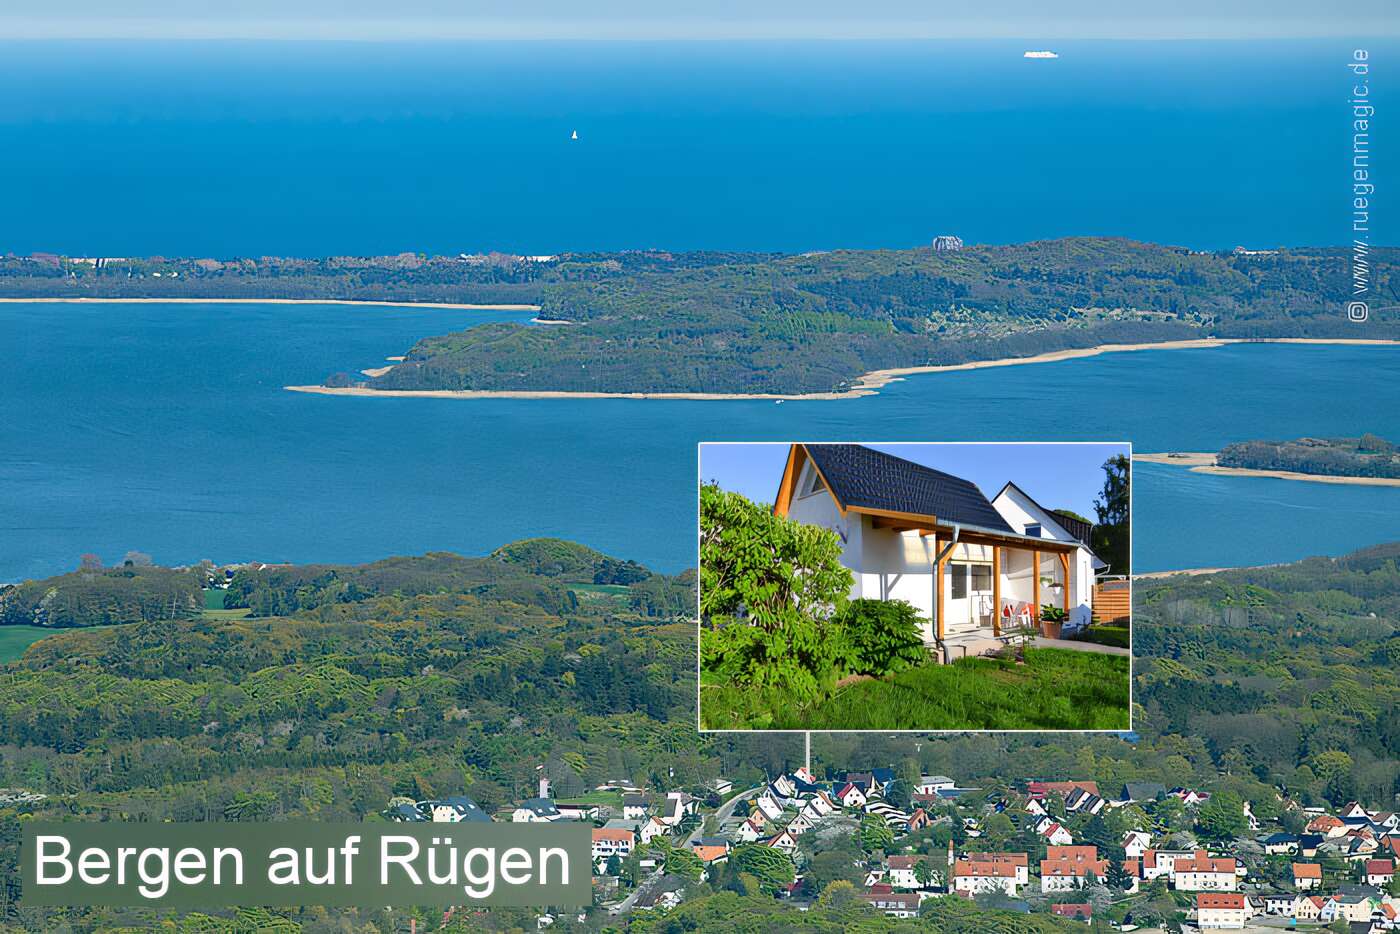 Lage des Ferienhauses in Bergen auf Rügen